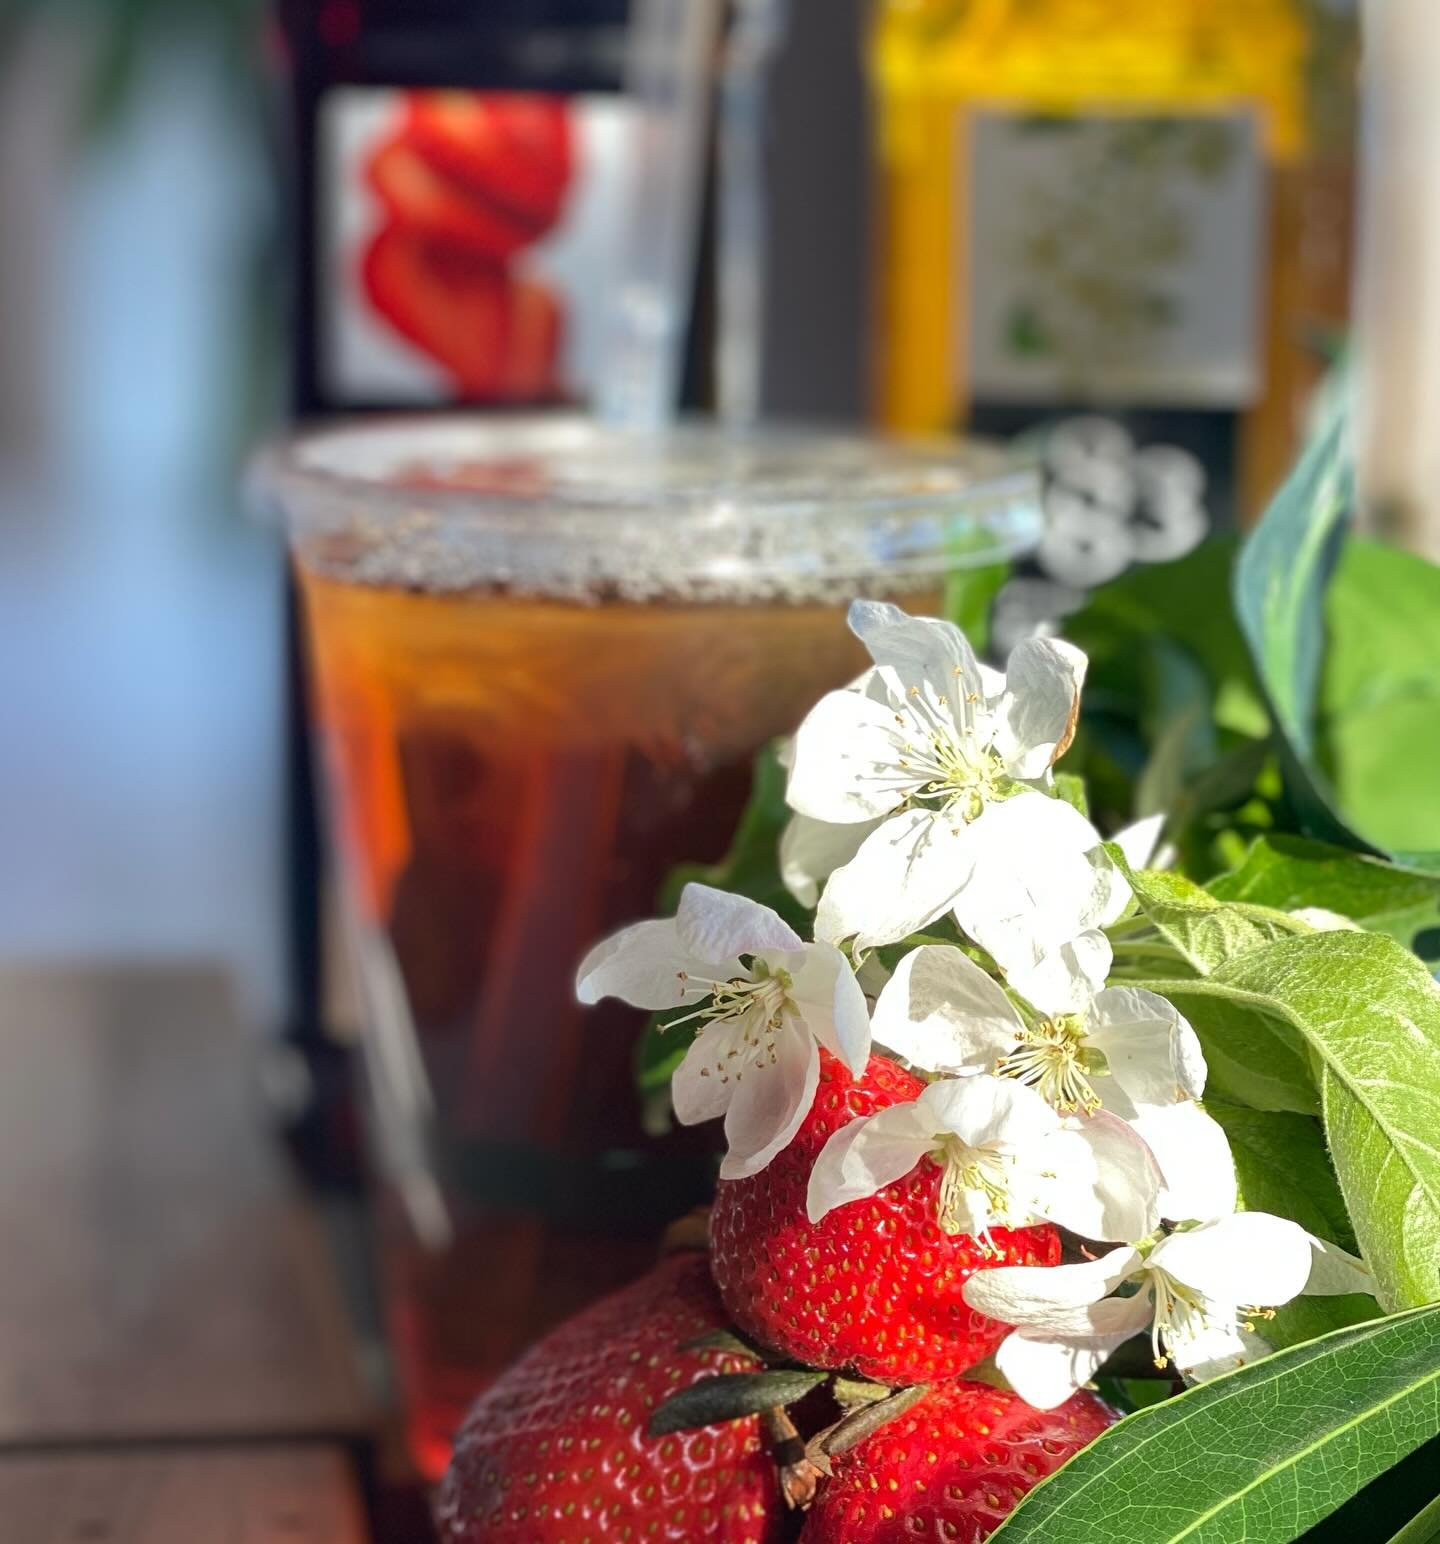 Our Spring / Summer special: strawberry elderflower iced tea. 

#chathamnj #shorthillsnj #madisonnj #strawberryelderflower #icedtea #strawberryelderflowericedtea #springdrinks #summerdrinks #newjersey #morristownnj #chathamchamberofcommerce #florhamp